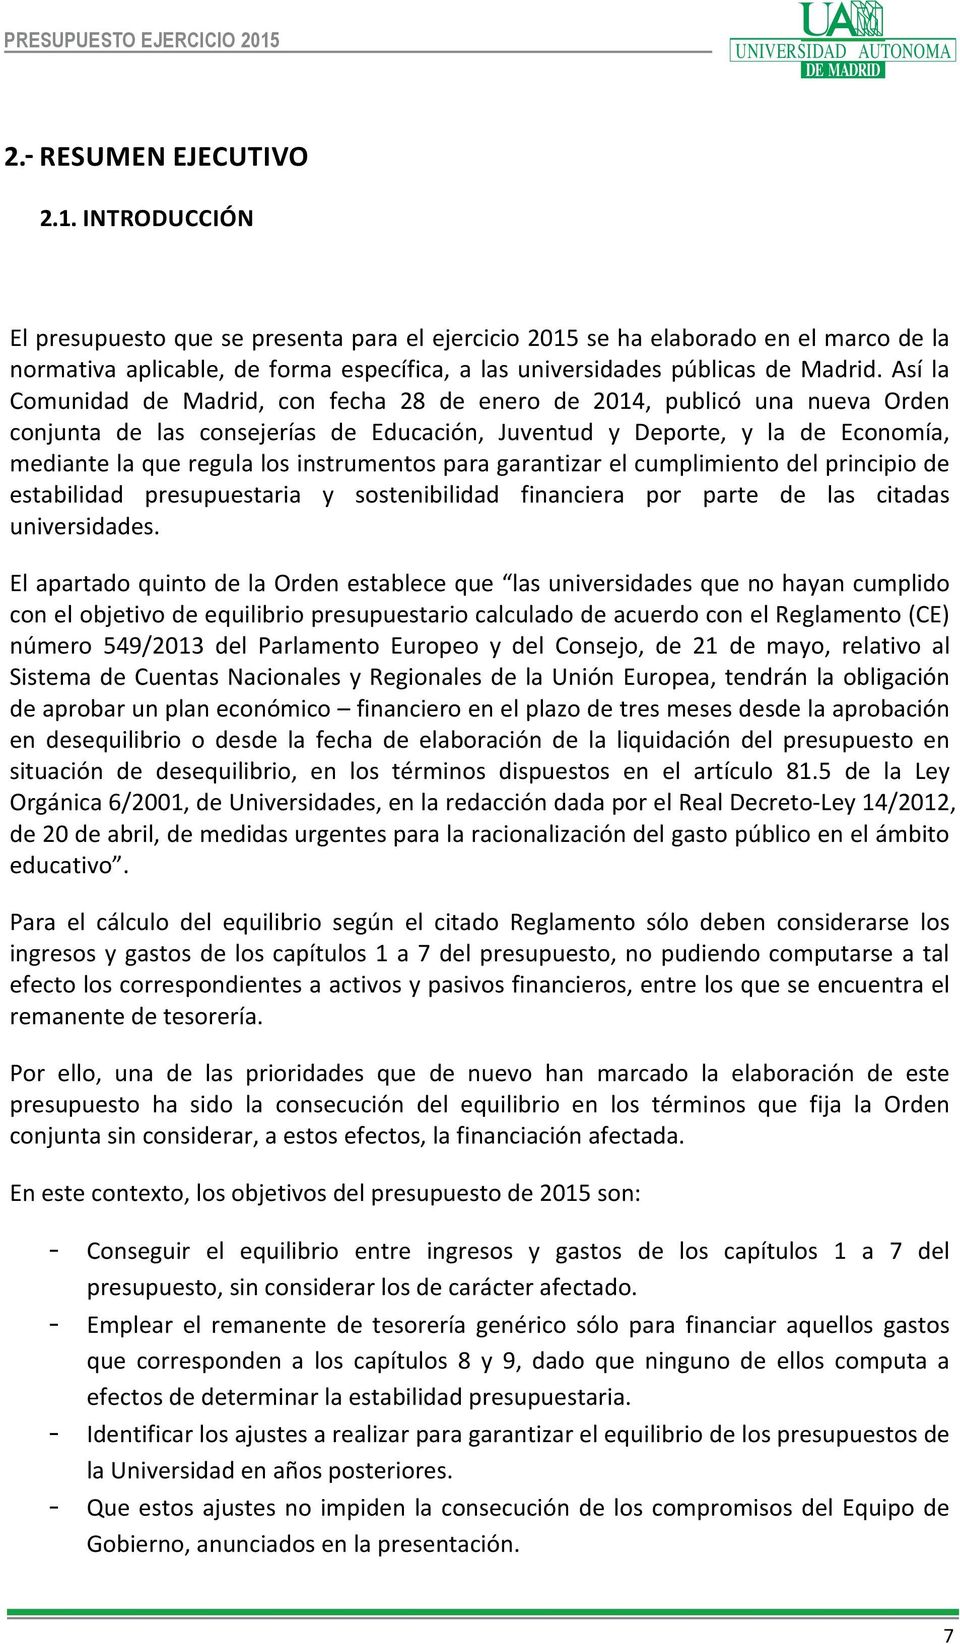 Así la Comunidad de Madrid, con fecha 28 de enero de 2014, publicó una nueva Orden conjunta de las consejerías de Educación, Juventud y Deporte, y la de Economía, mediante la que regula los